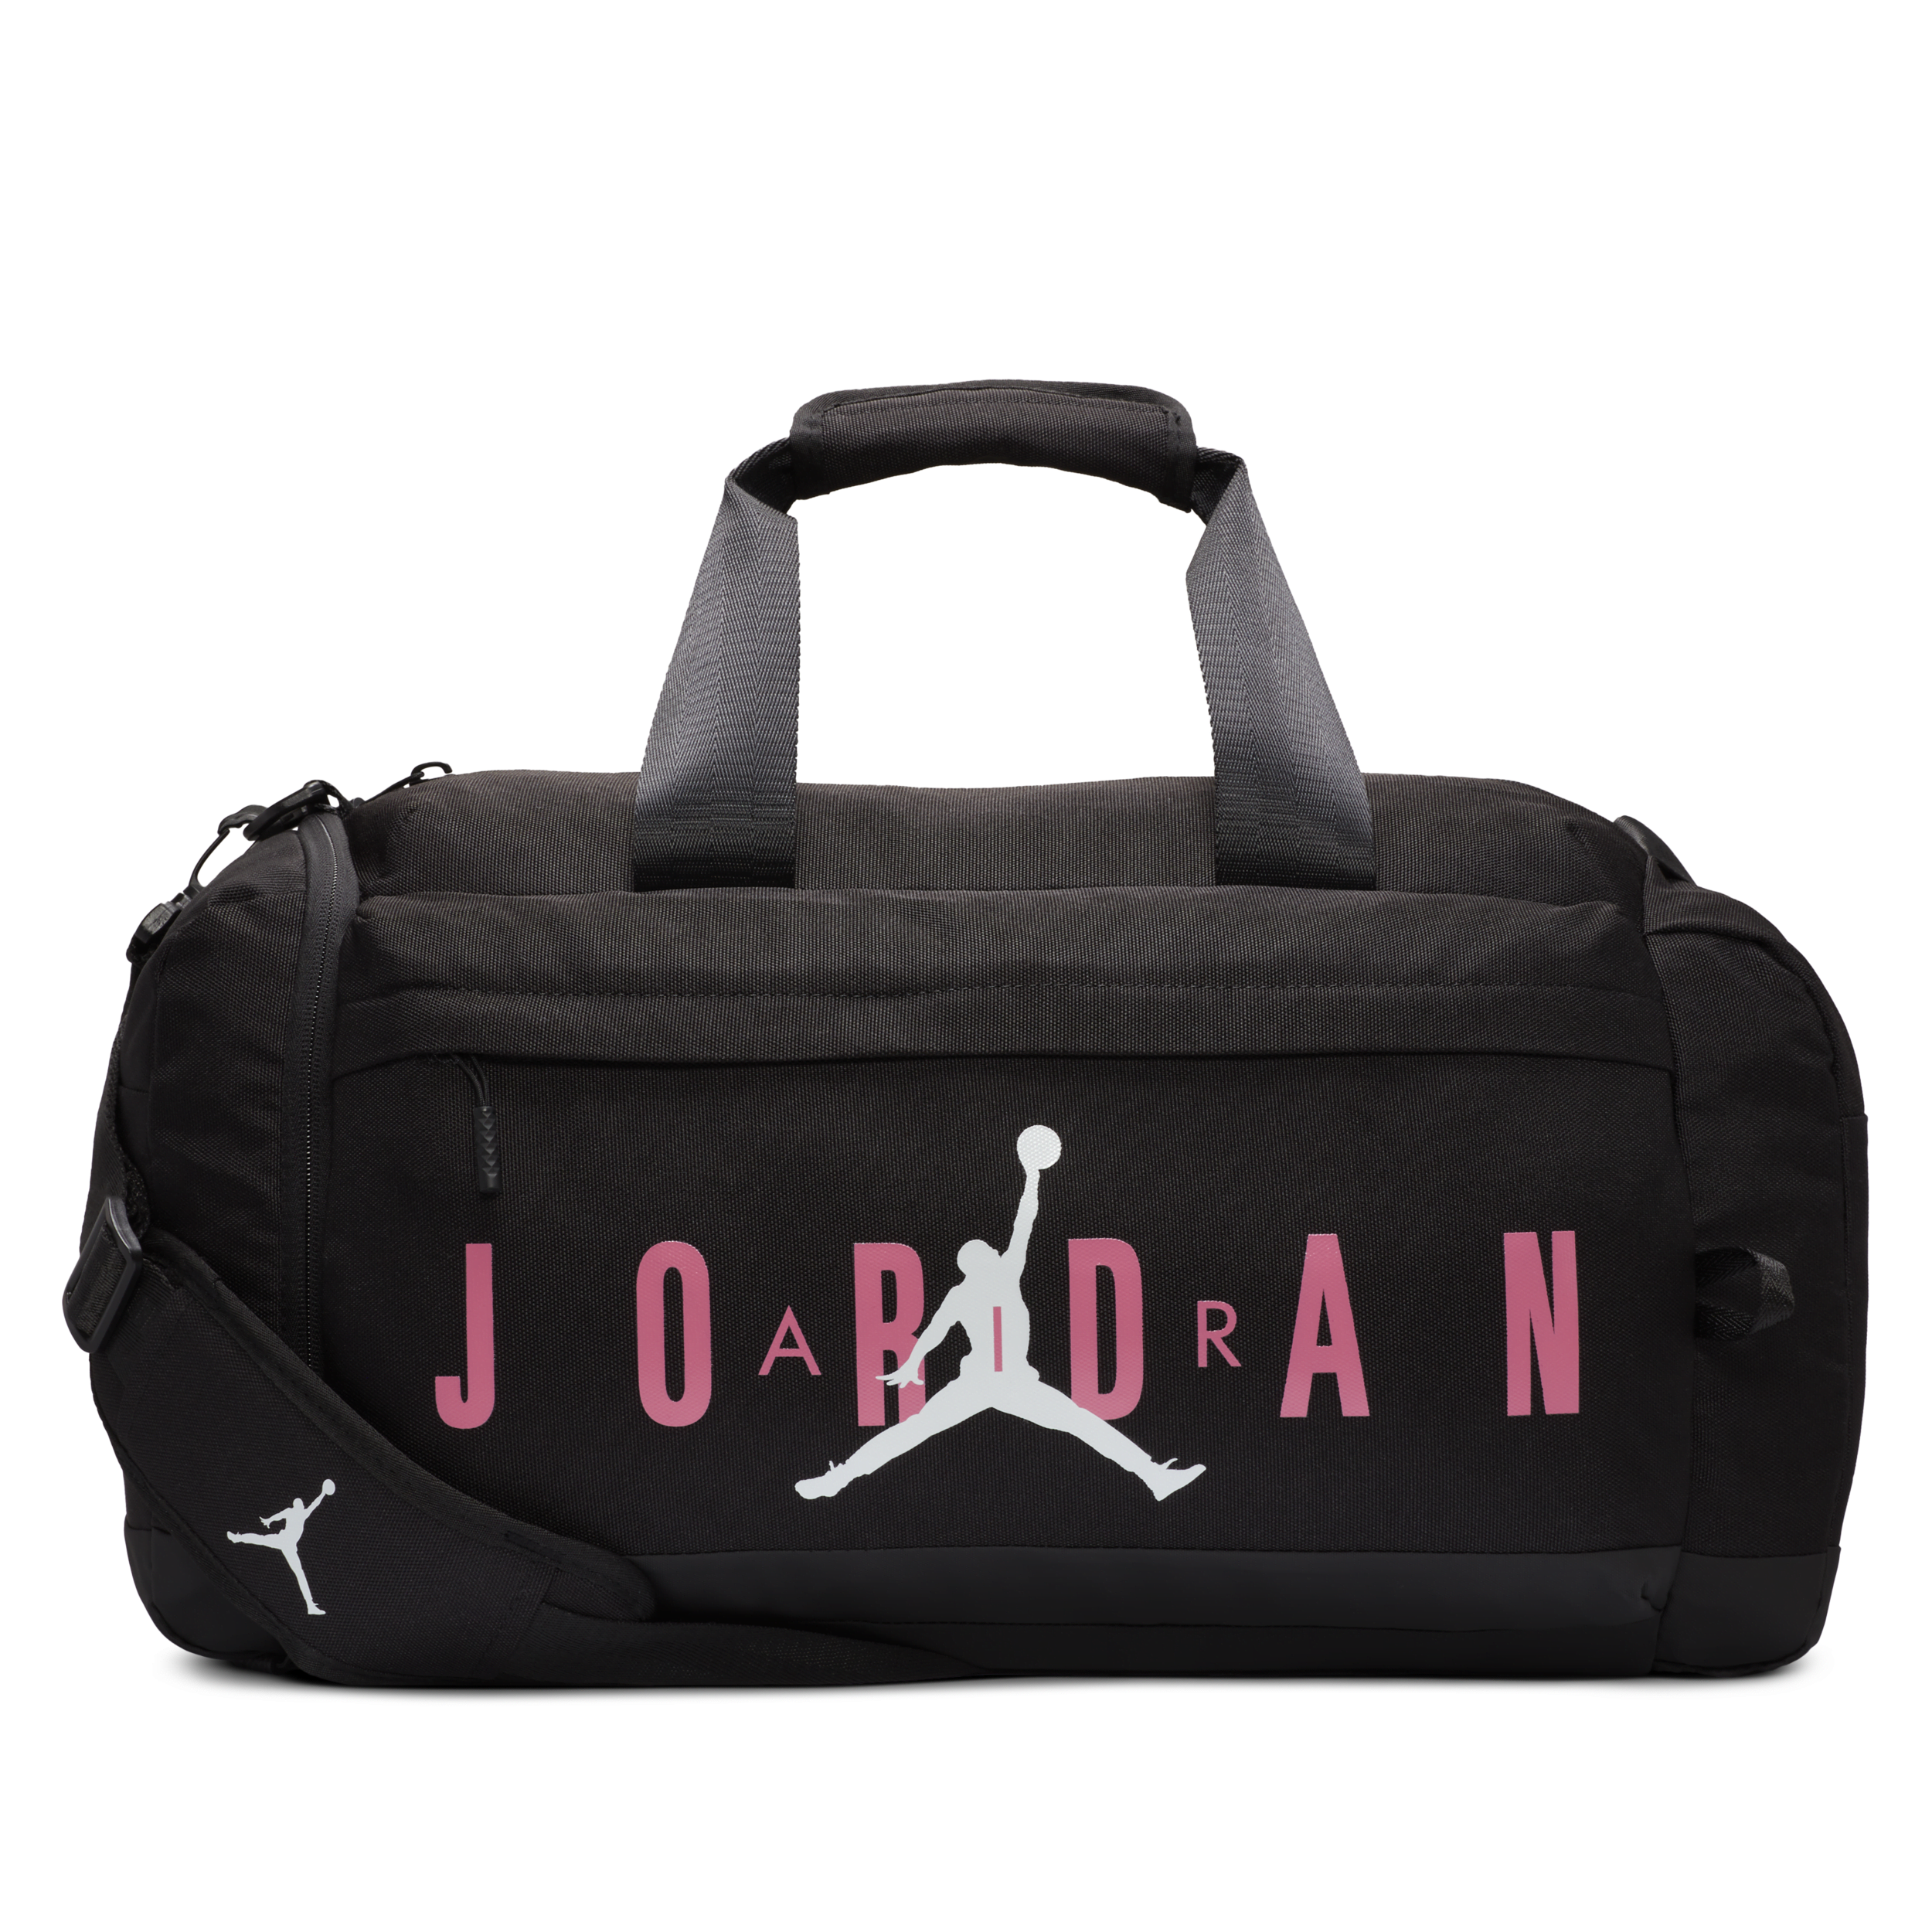 Jordan Stadium Tote Bag (14L).